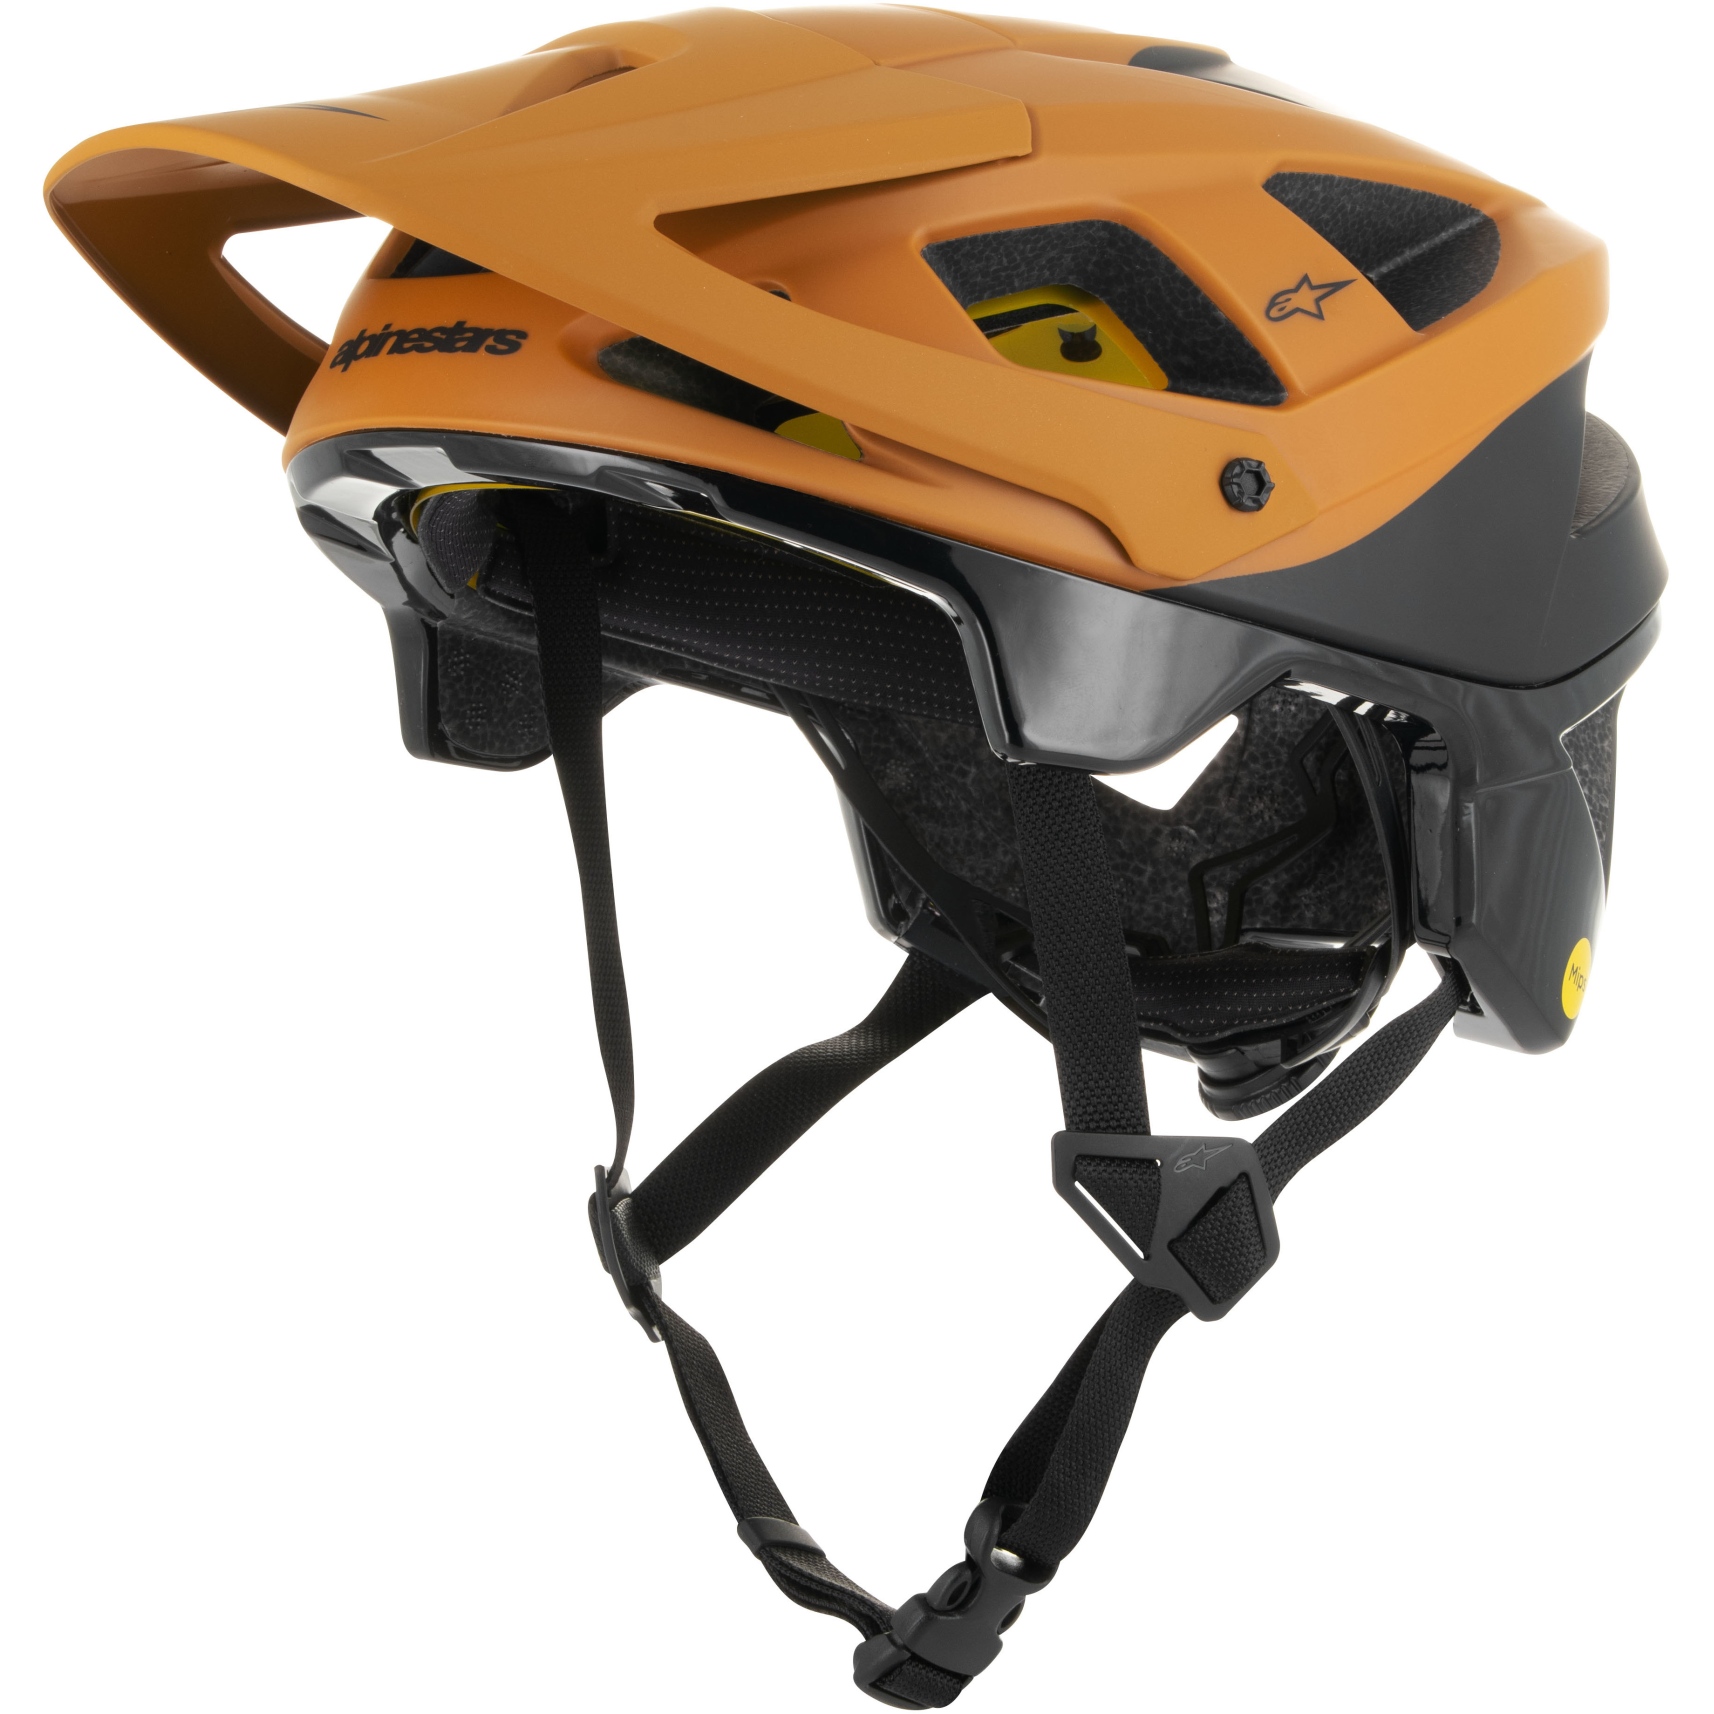 Produktbild von Alpinestars Vector Tech Helm - Zeal - black dark gold m&amp;g